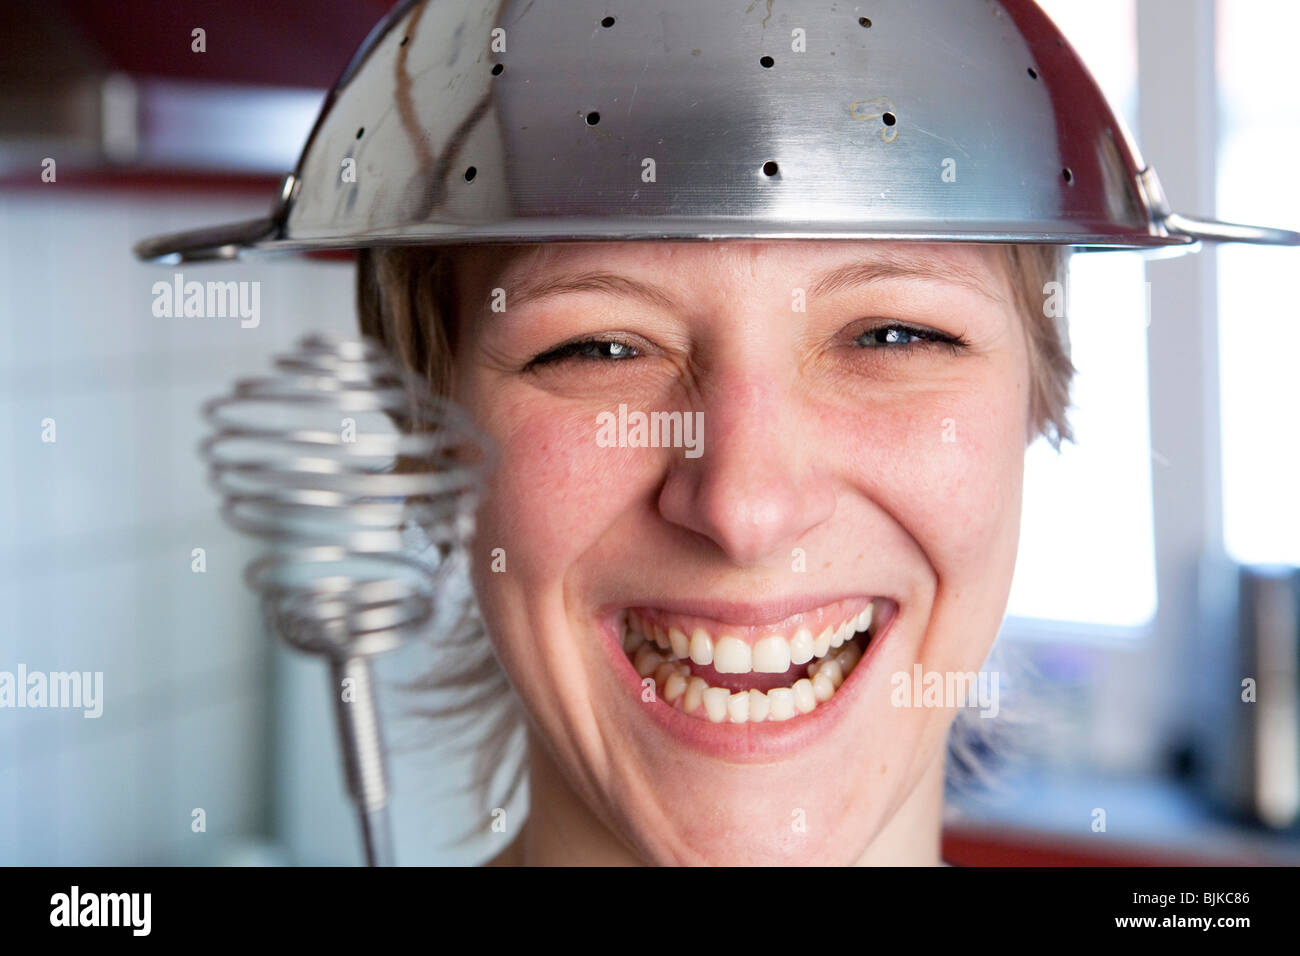 Lächelnde Frau in einer Küche mit einem Sieb Küche auf sie und einen Schneebesen in der Hand spielen ein Kochduell Stockfoto